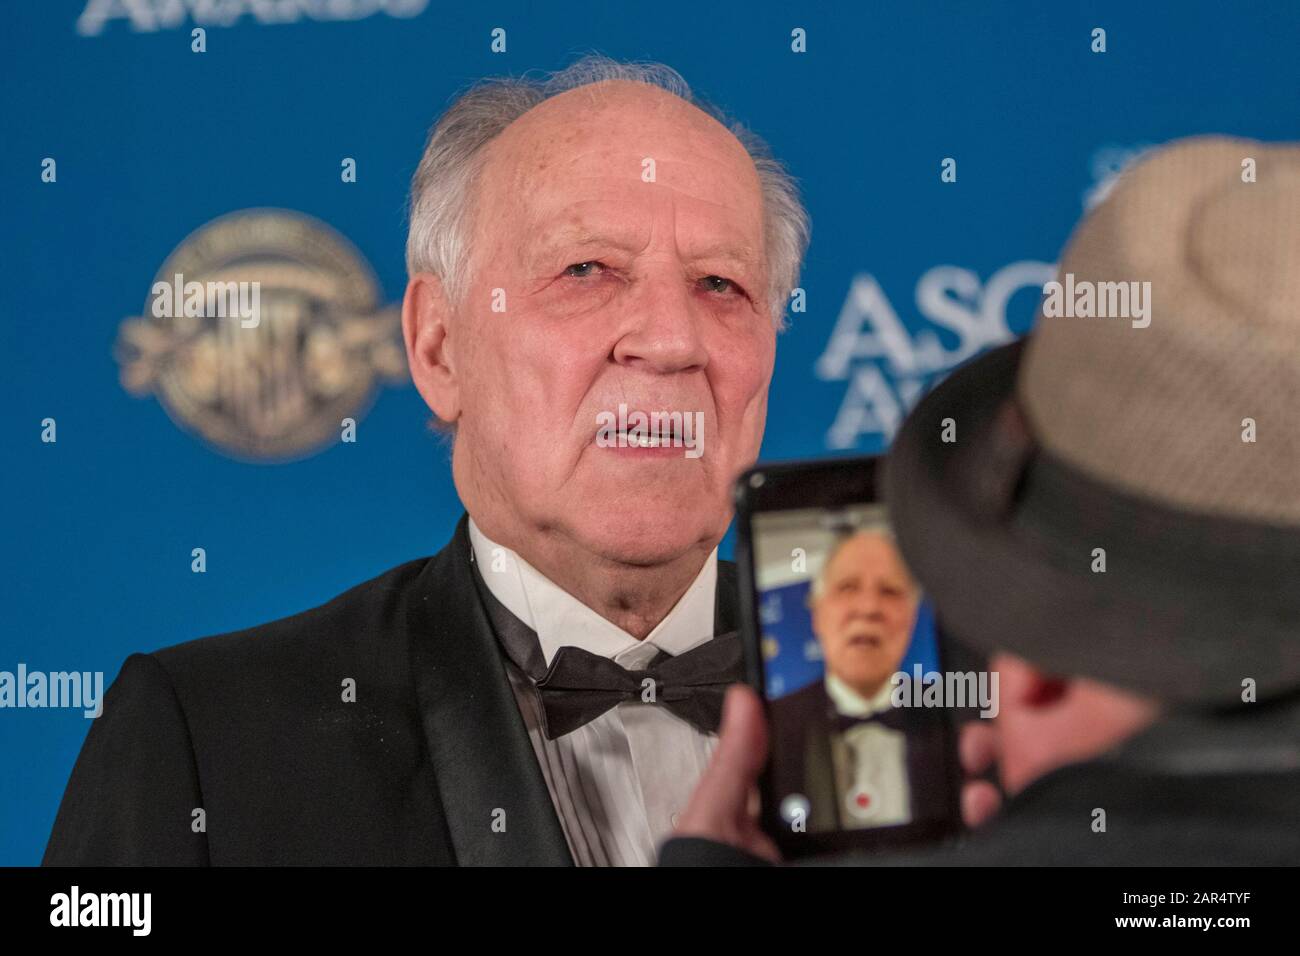 Werner Herzog partecipa alla 34th Annual American Society of Cinematographers ASC Awards alla Ray Dolby Ballroom di Los Angeles, California, USA, il 25 gennaio 2020. | utilizzo in tutto il mondo Foto Stock